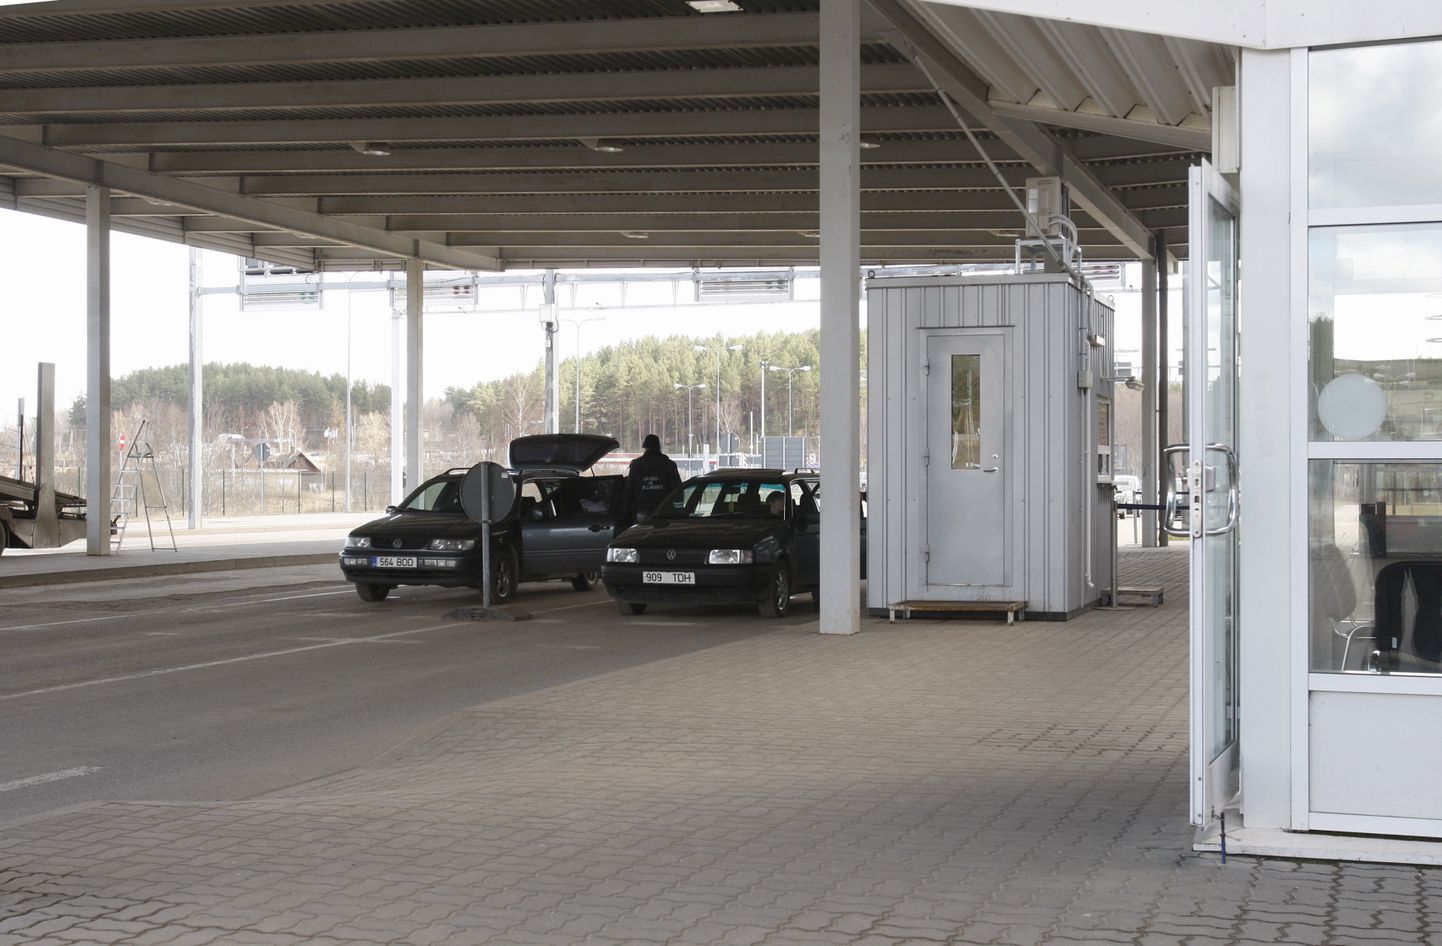 Ka Koidula piiripunktis saab taas üle piiri sõita liisingautodega ilma Venemaa tollis tagatisraha maksmata.